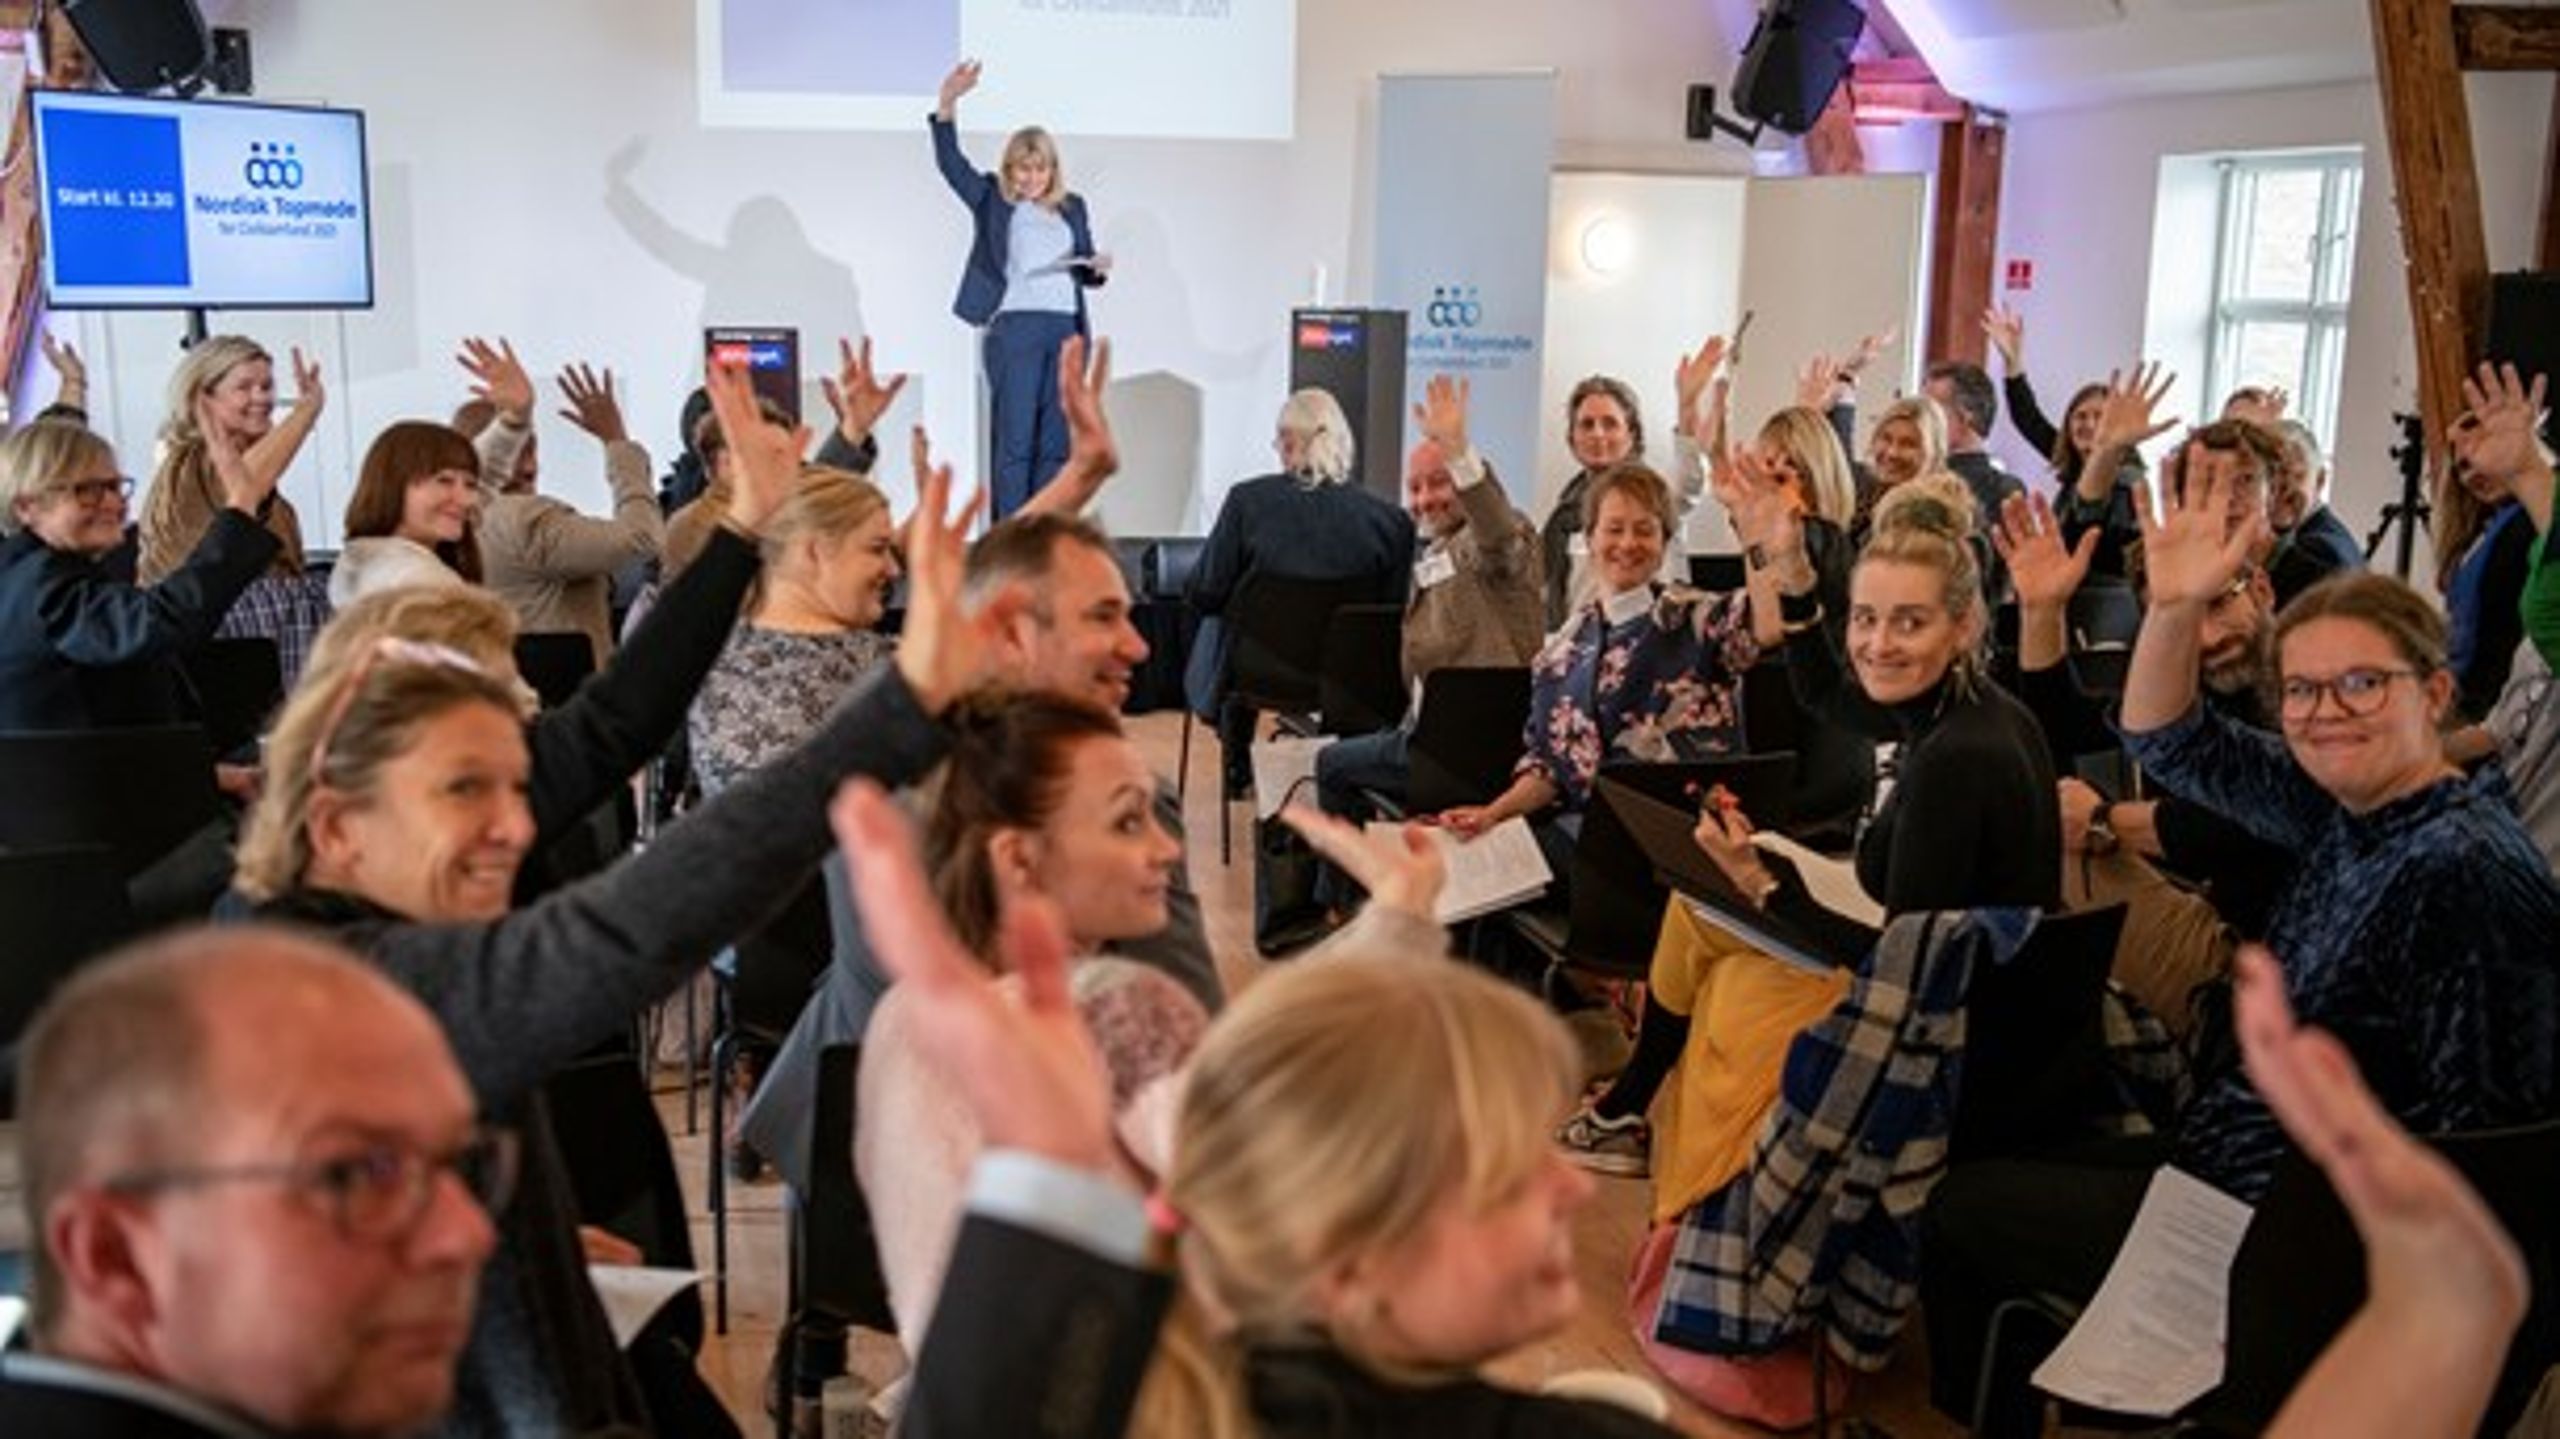 Nordisk Topmøde for Civilsamfund blev afviklet både fysisk og på live stream. Gæsterne til det fysiske møde sendte jævnligt hilsner til det digitale publikum. På scenen Laura Auken, direktør for Center for Frivilligt Socialt Arbejde, som er medarrangør af mødet.